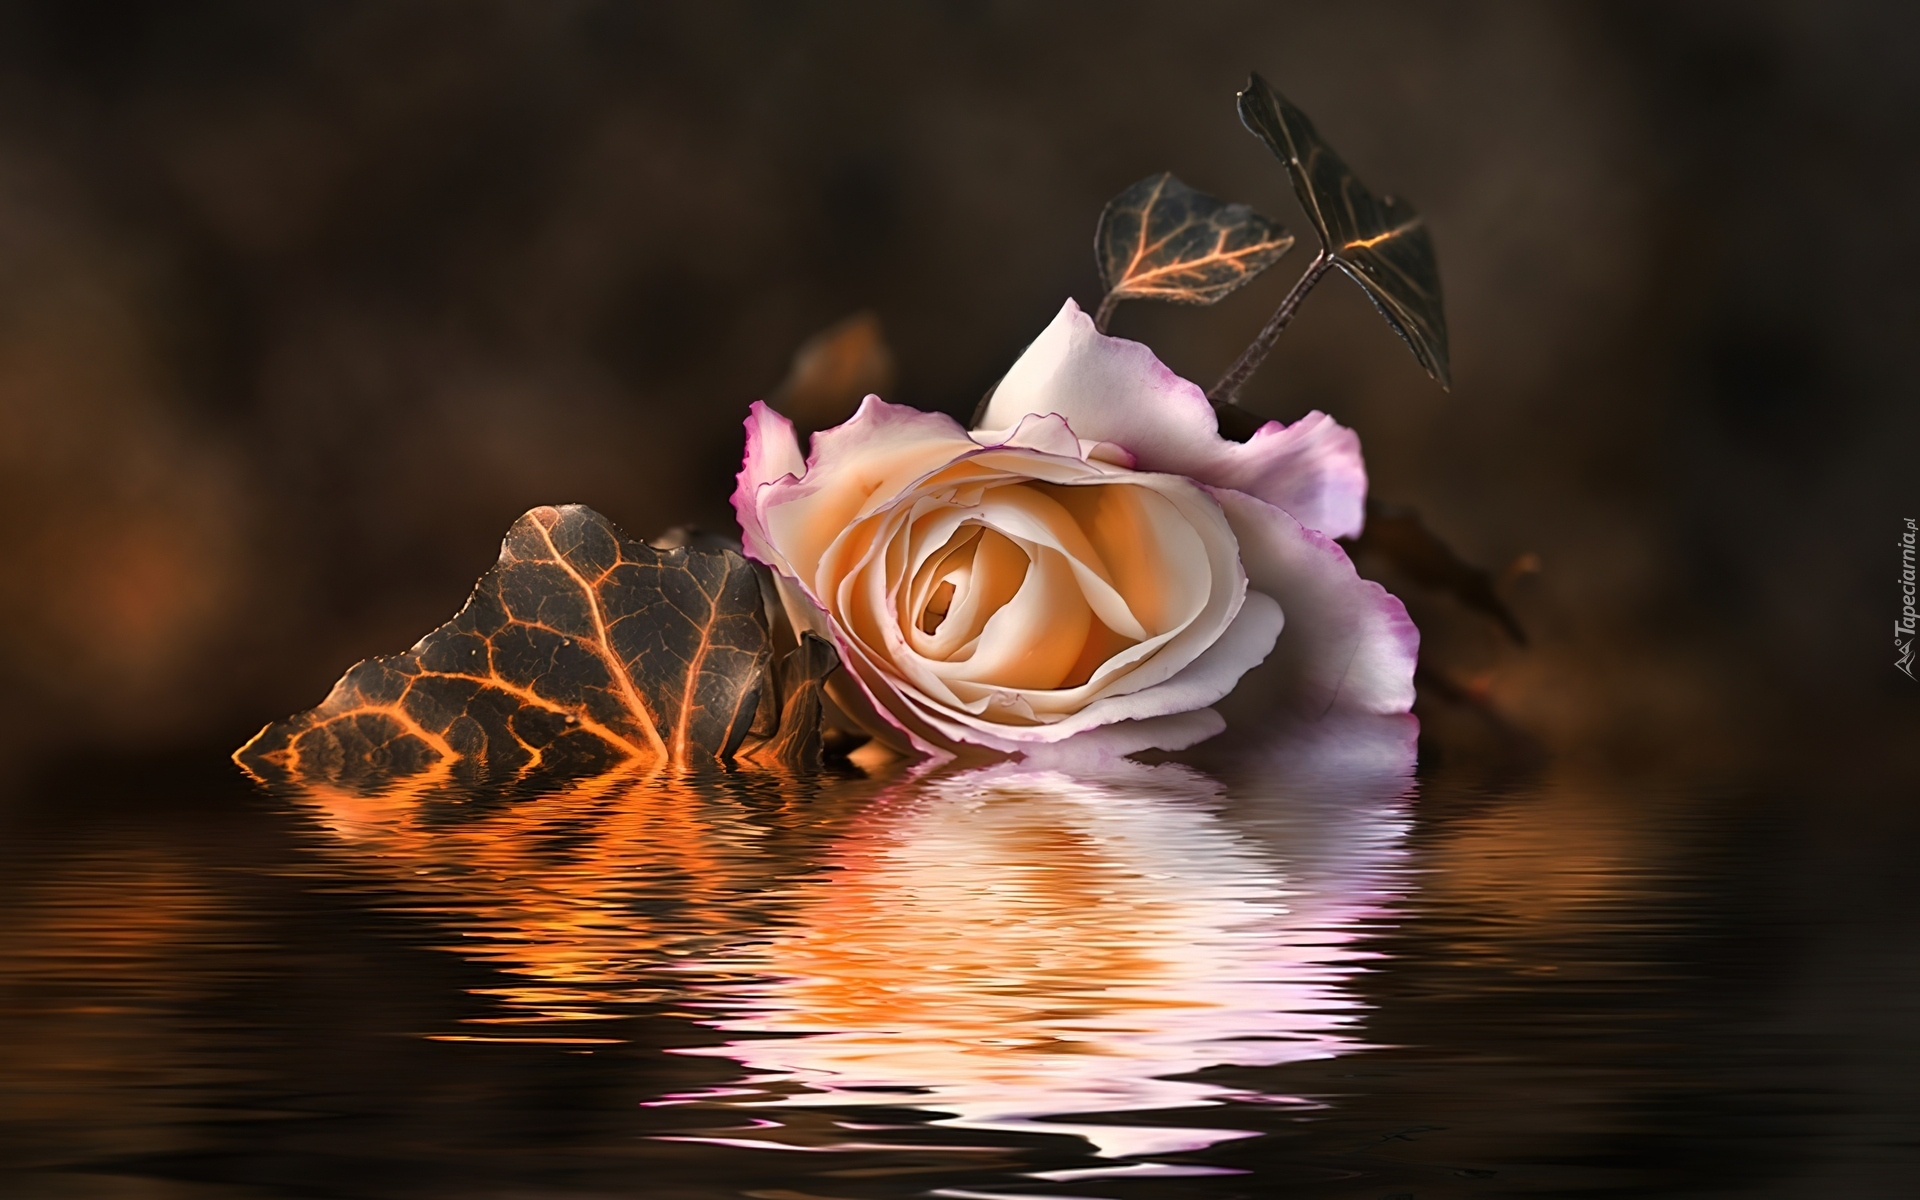 Картинка красивая с добрым вечером нежная. Розы ночью. Добрый вечер цветы красивые. Розы вечер. Розы в воде.